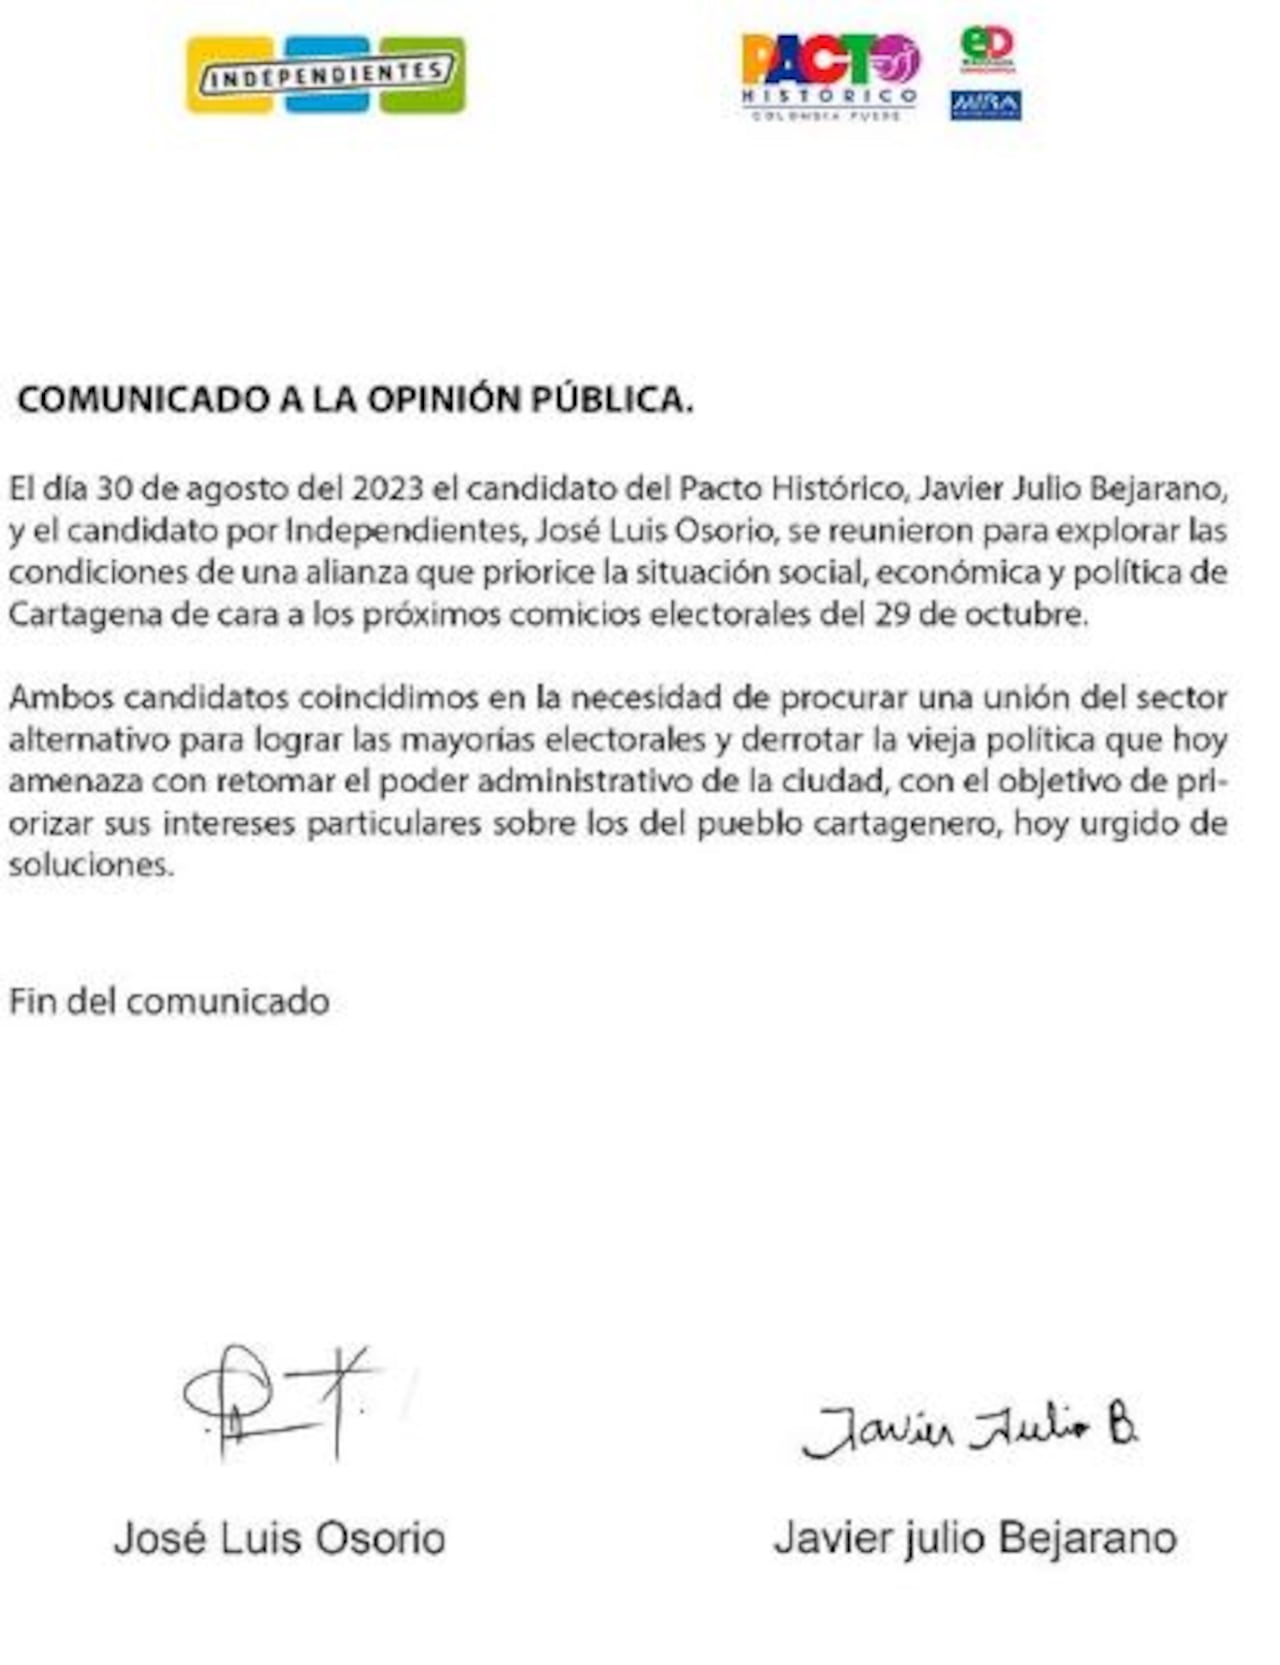 Comunicado sobre posible alianza entre el Pacto Histórico e Independientes en Cartagena